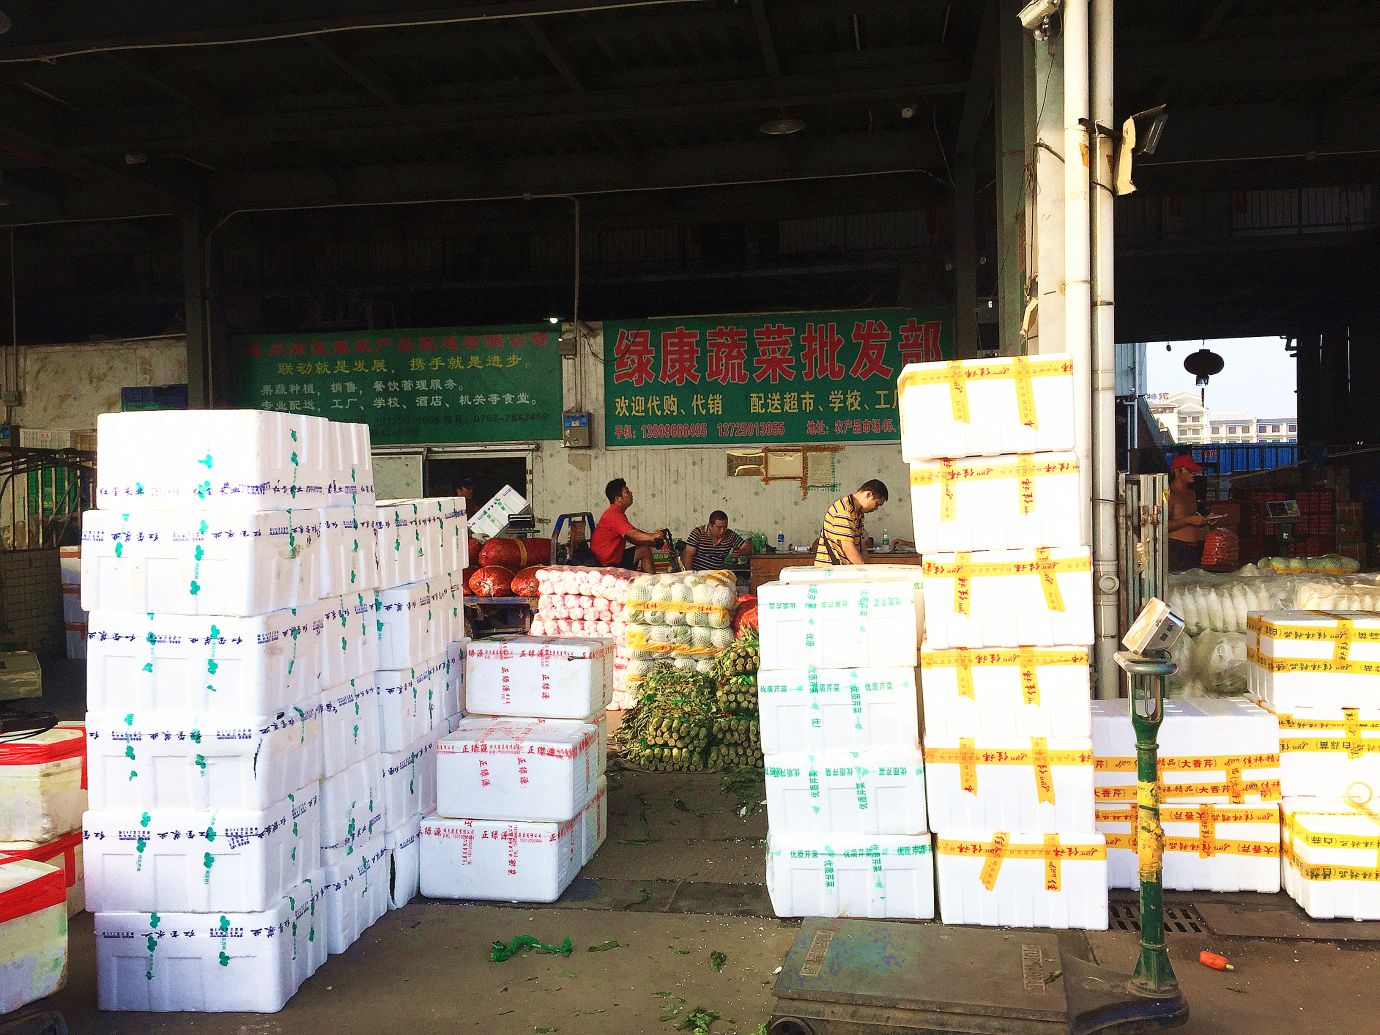 农商新星 8个档口,20多个品种,惠州蔬菜批发商怎样做到日销120余吨?